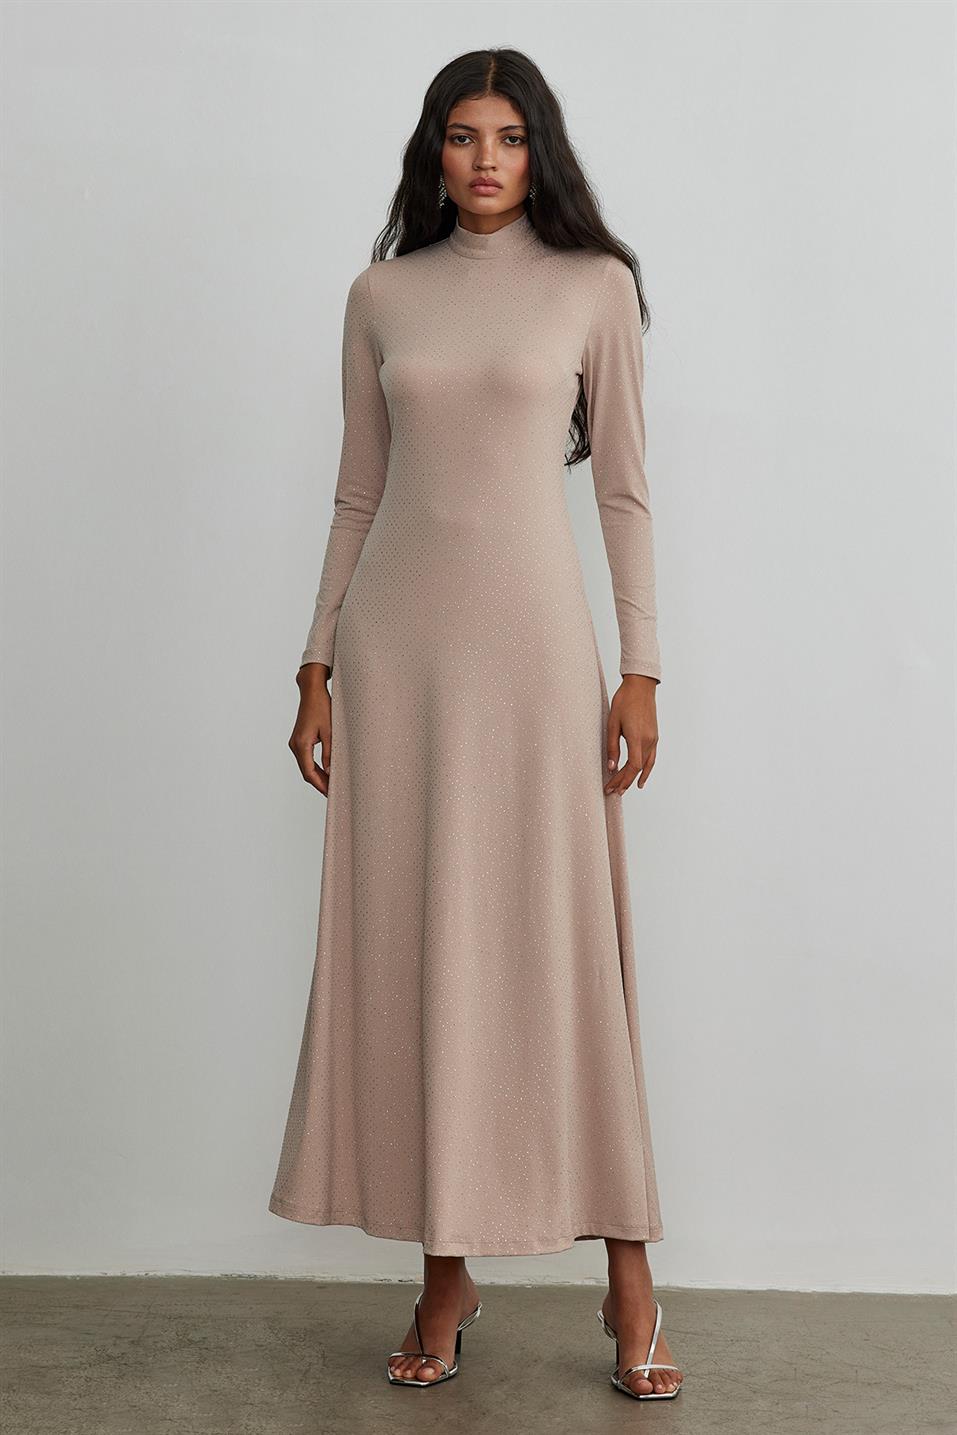 Pudra Işıltılı Maxi Örme Elbise